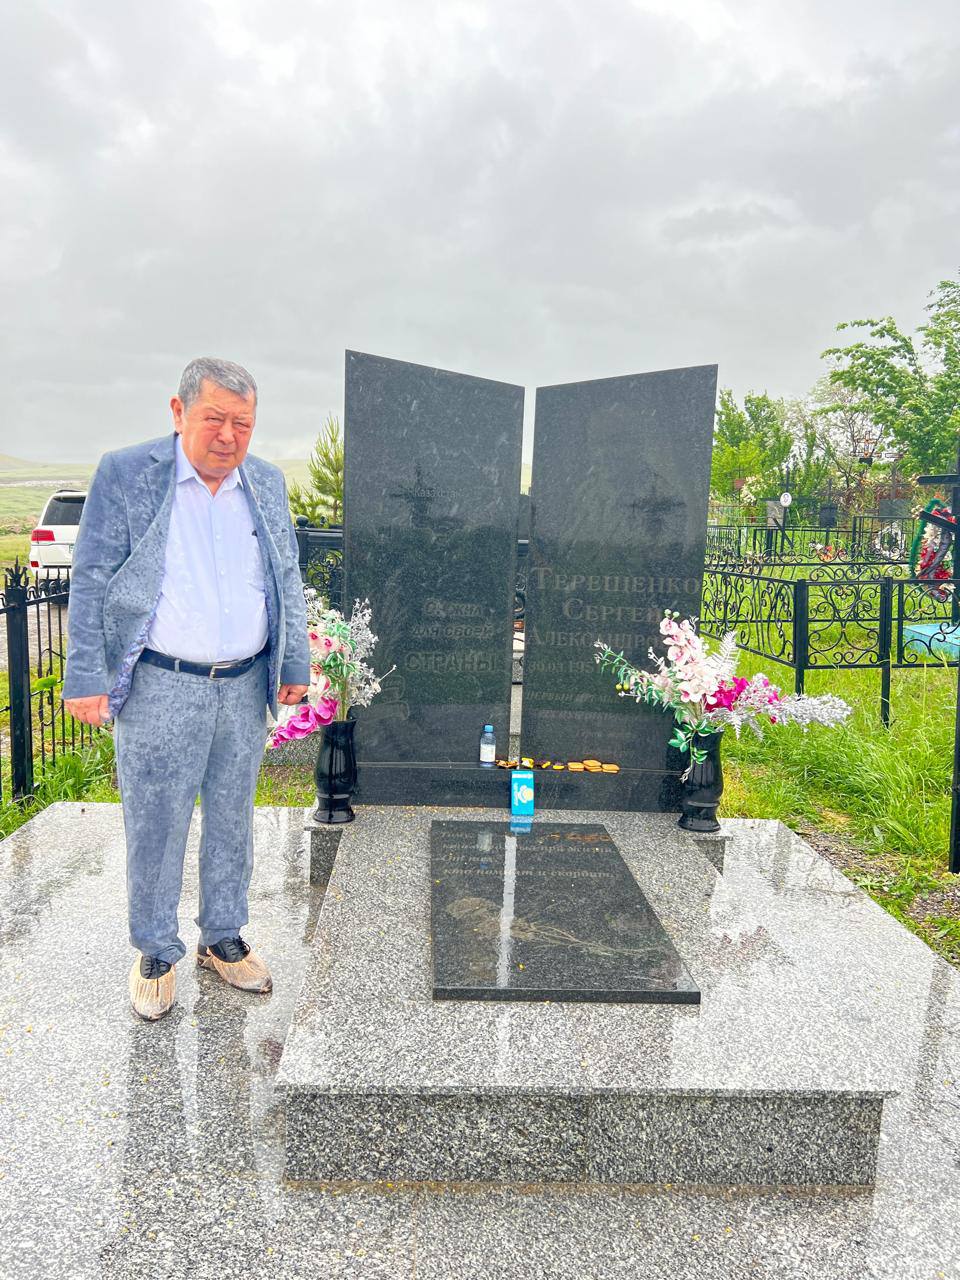 5 мая Шарипов Руслан Исмаилович посетил кладбище, где покоится Сергей Александрович Терешенко, его родители, дедушка и бабушка , родственники. Пусть земля им будет пухом! Пусть покоятся души ушедших в раю!